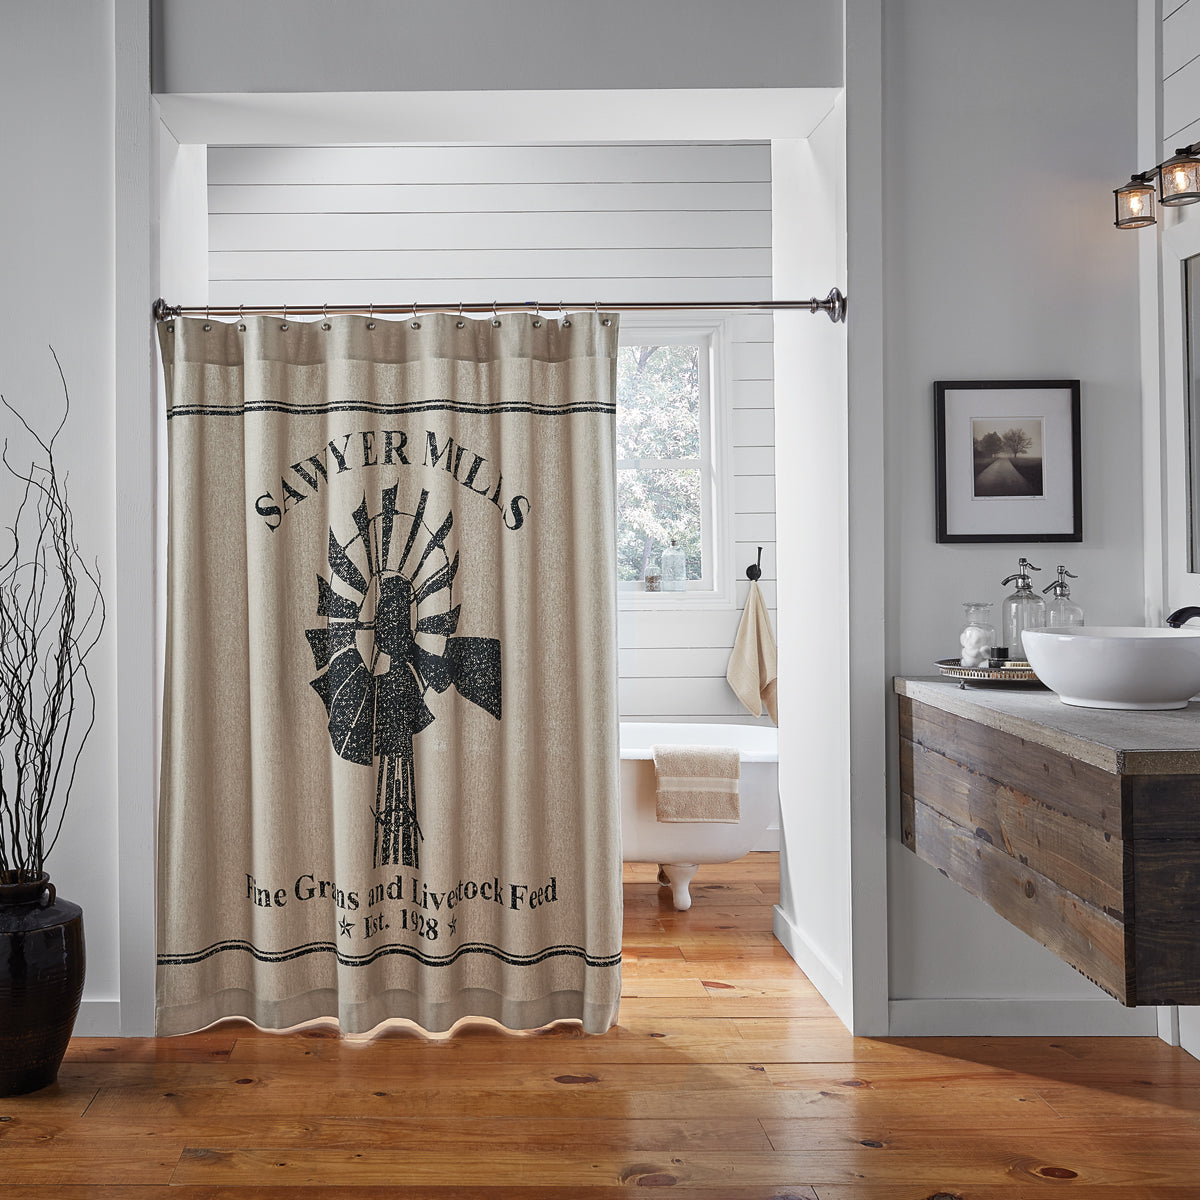  Farmhouse Bathroom Decor Shower Curtain Info